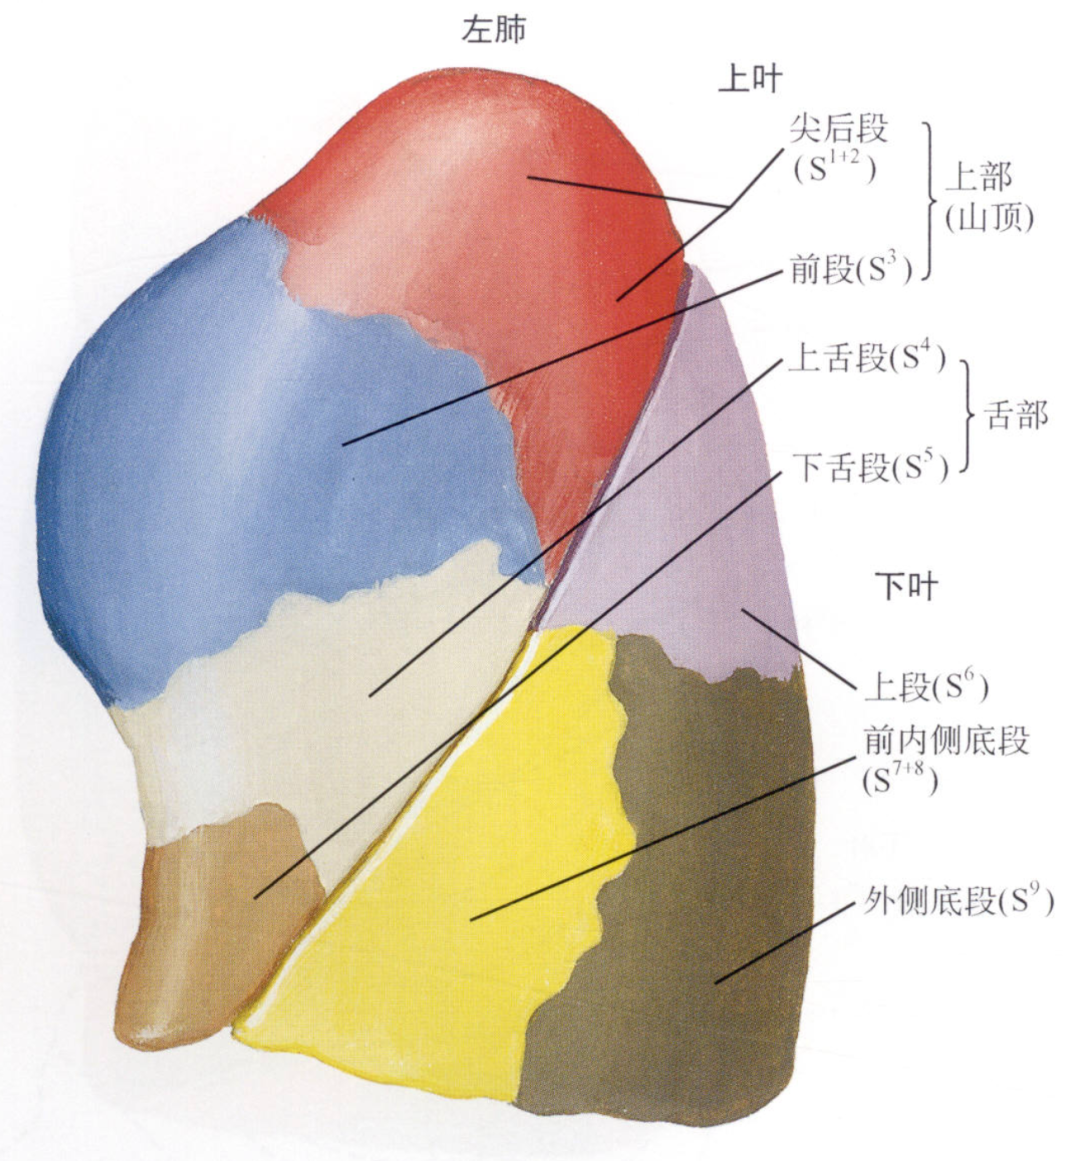 左肺的上叶和中叶融合成为上叶的上部( 固有上叶)和舌部( 舌叶),与下